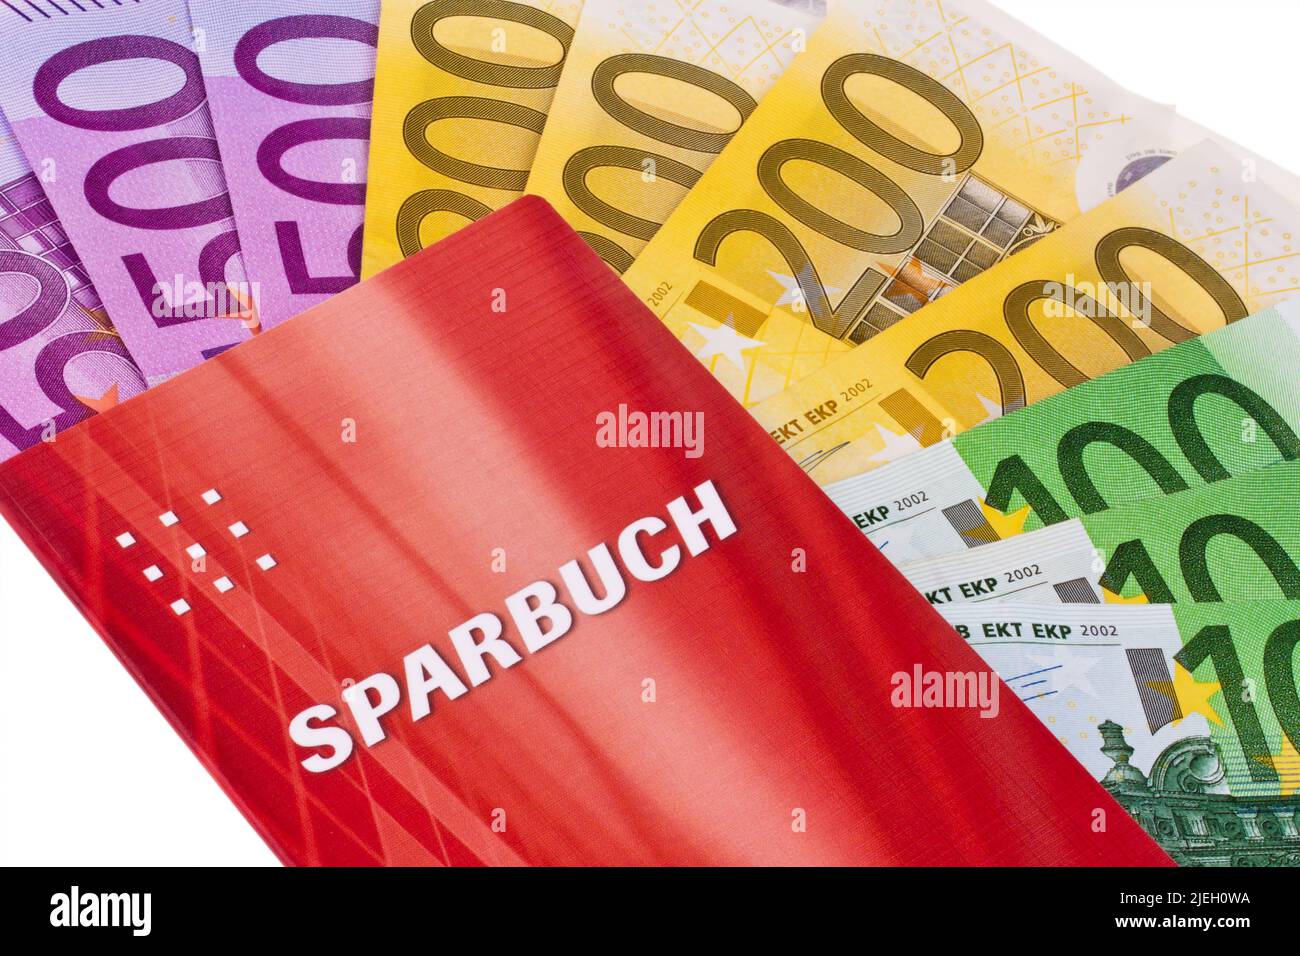 Sparbuch mit Euro-Banknoten, 100er, 200ER, 500er, Geldscheine, Foto de stock